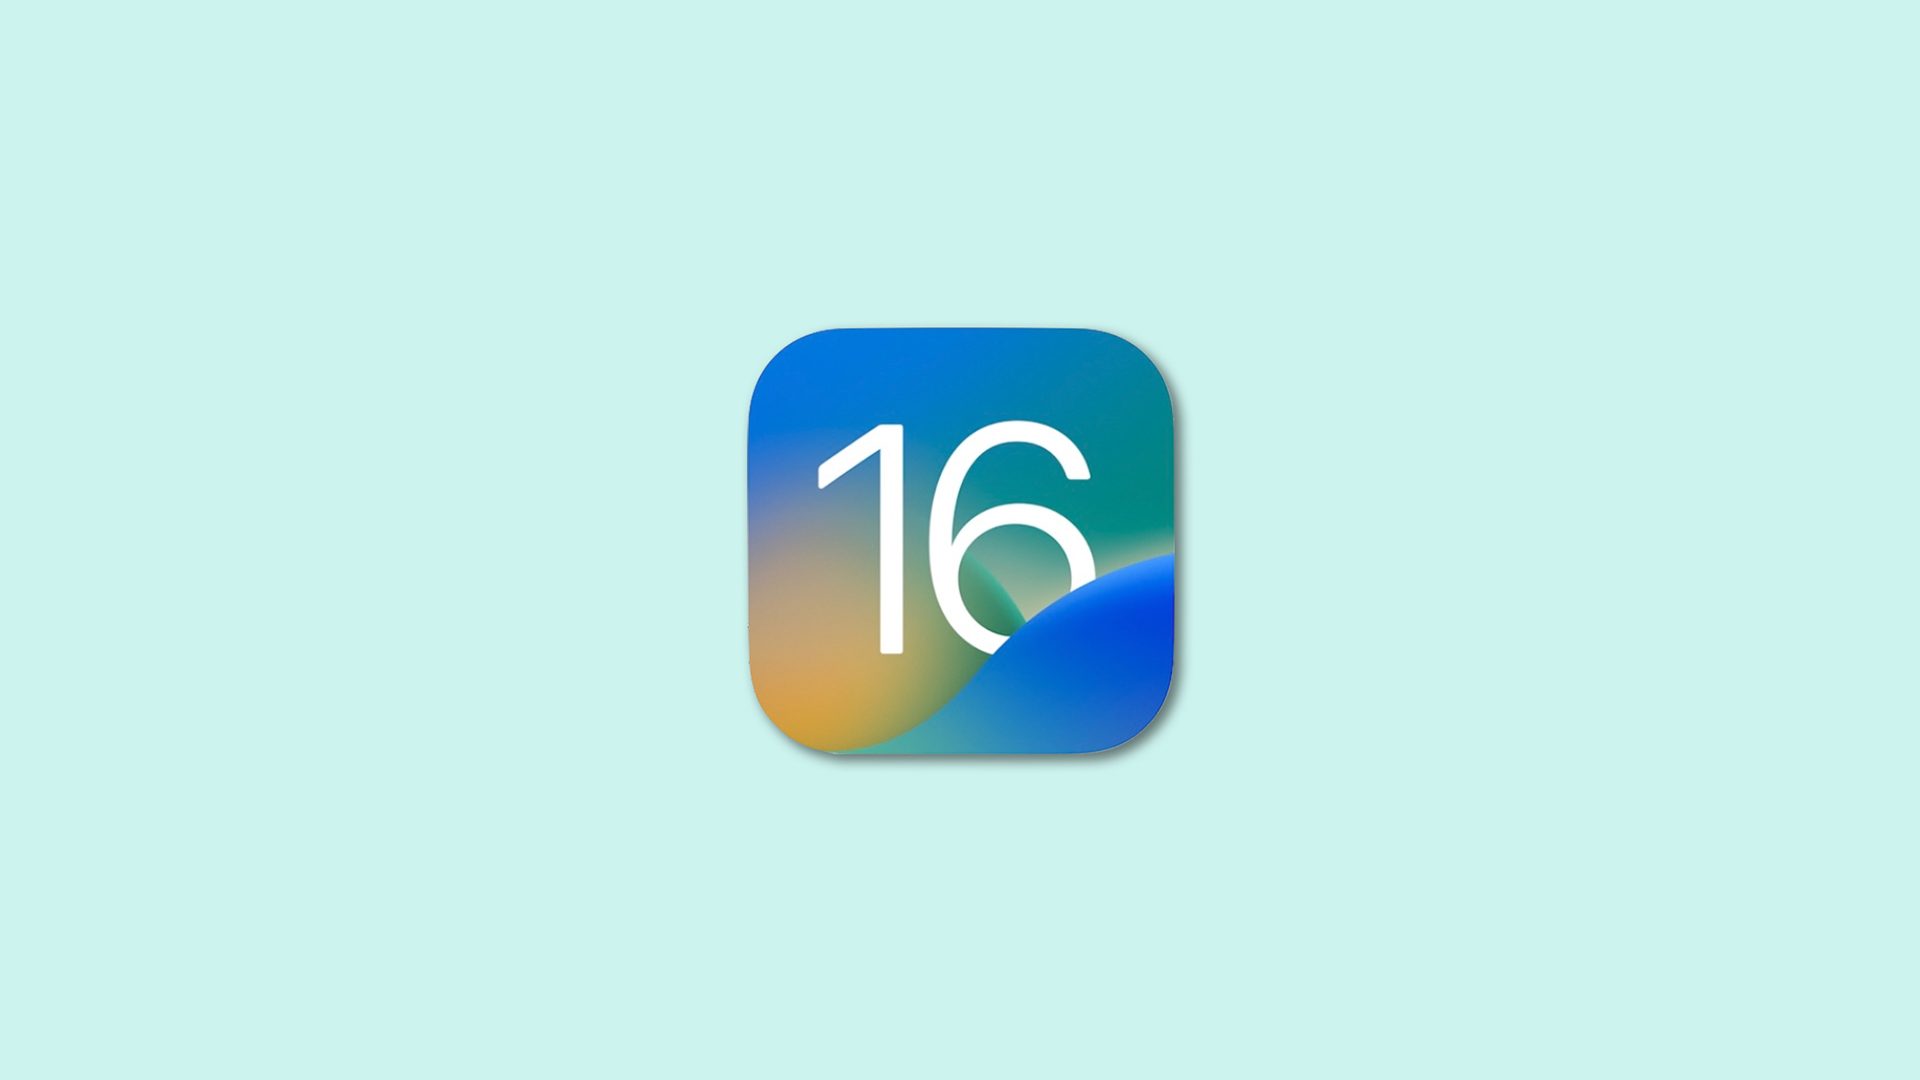 Bästa högkvalitativa bilbakgrunder för iOS 16 (djupeffekt)